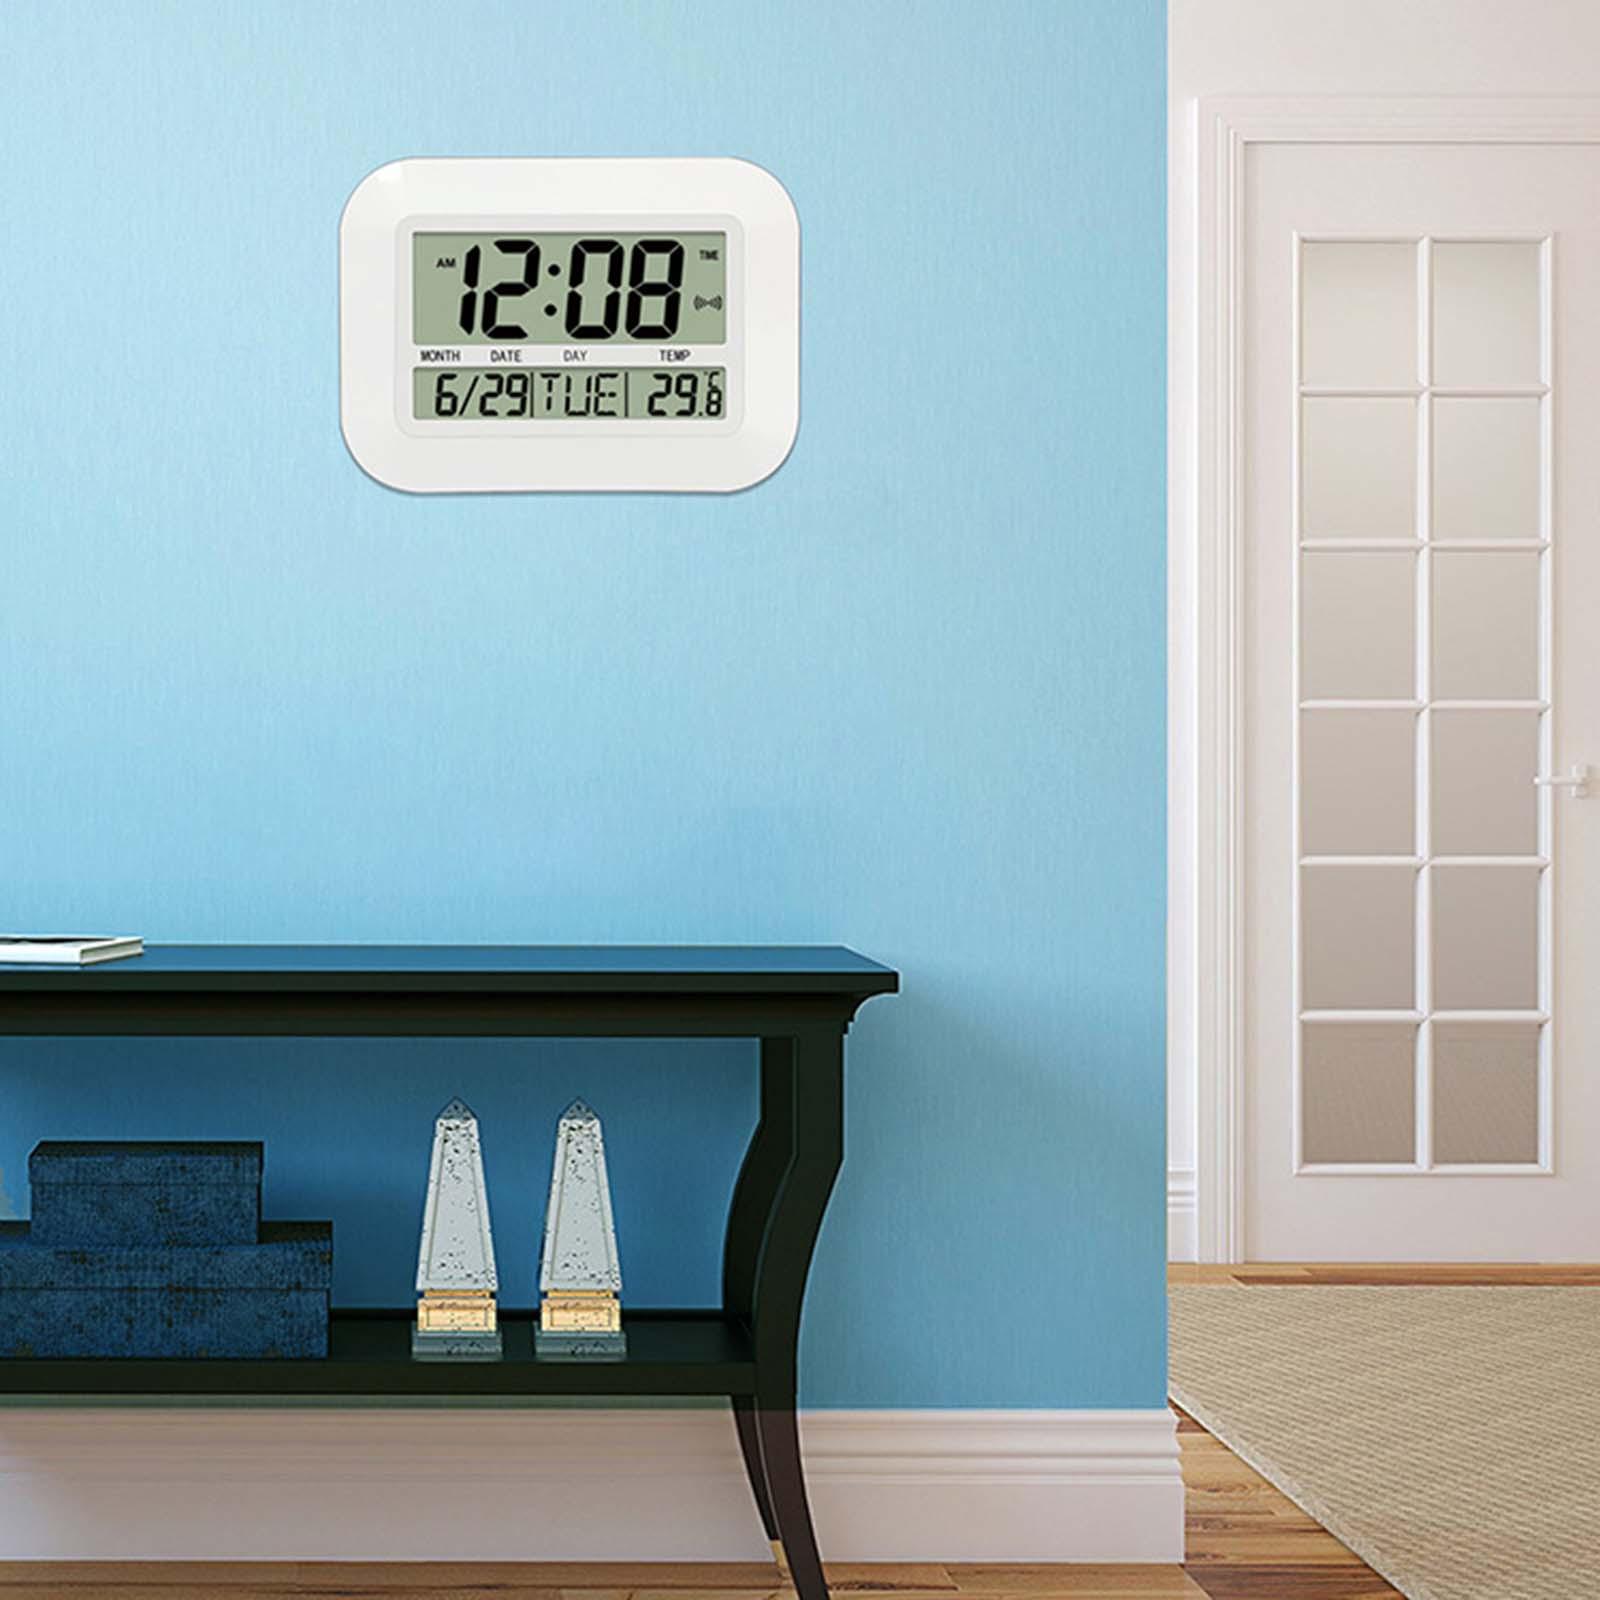 Electronic Wall Clock Alarm Clock for Bedroom School NightStand